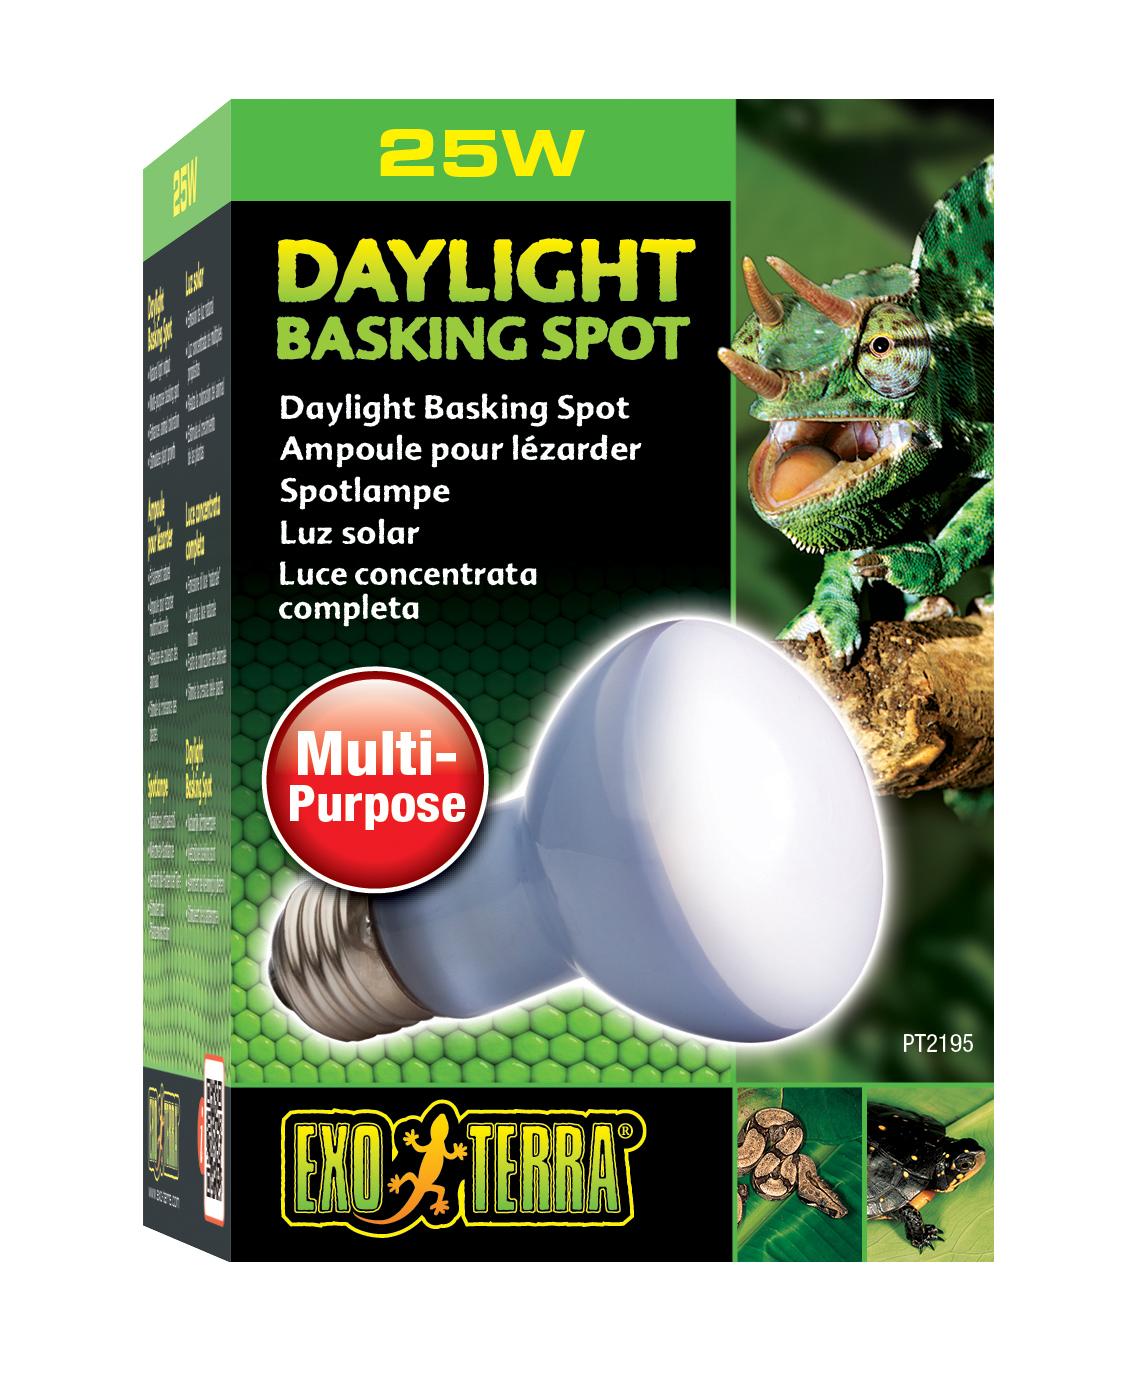 Ex lampe daylight basking spot - Product shot